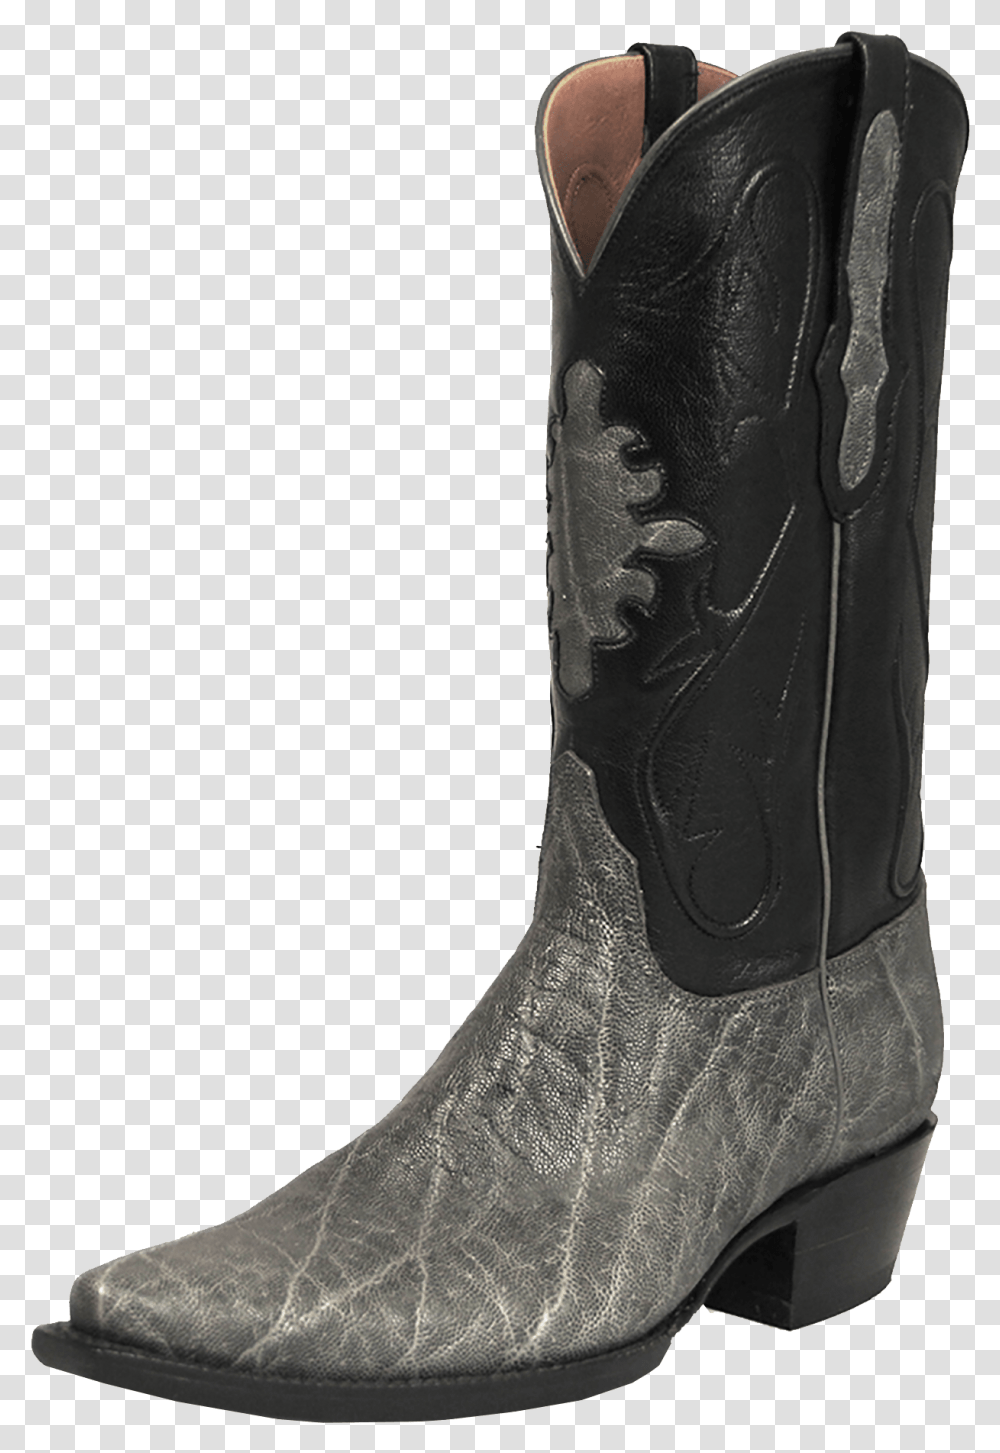 Cowboy Boots Photo Men Snip Toe Cowboy Boots, Apparel, Footwear Transparent Png